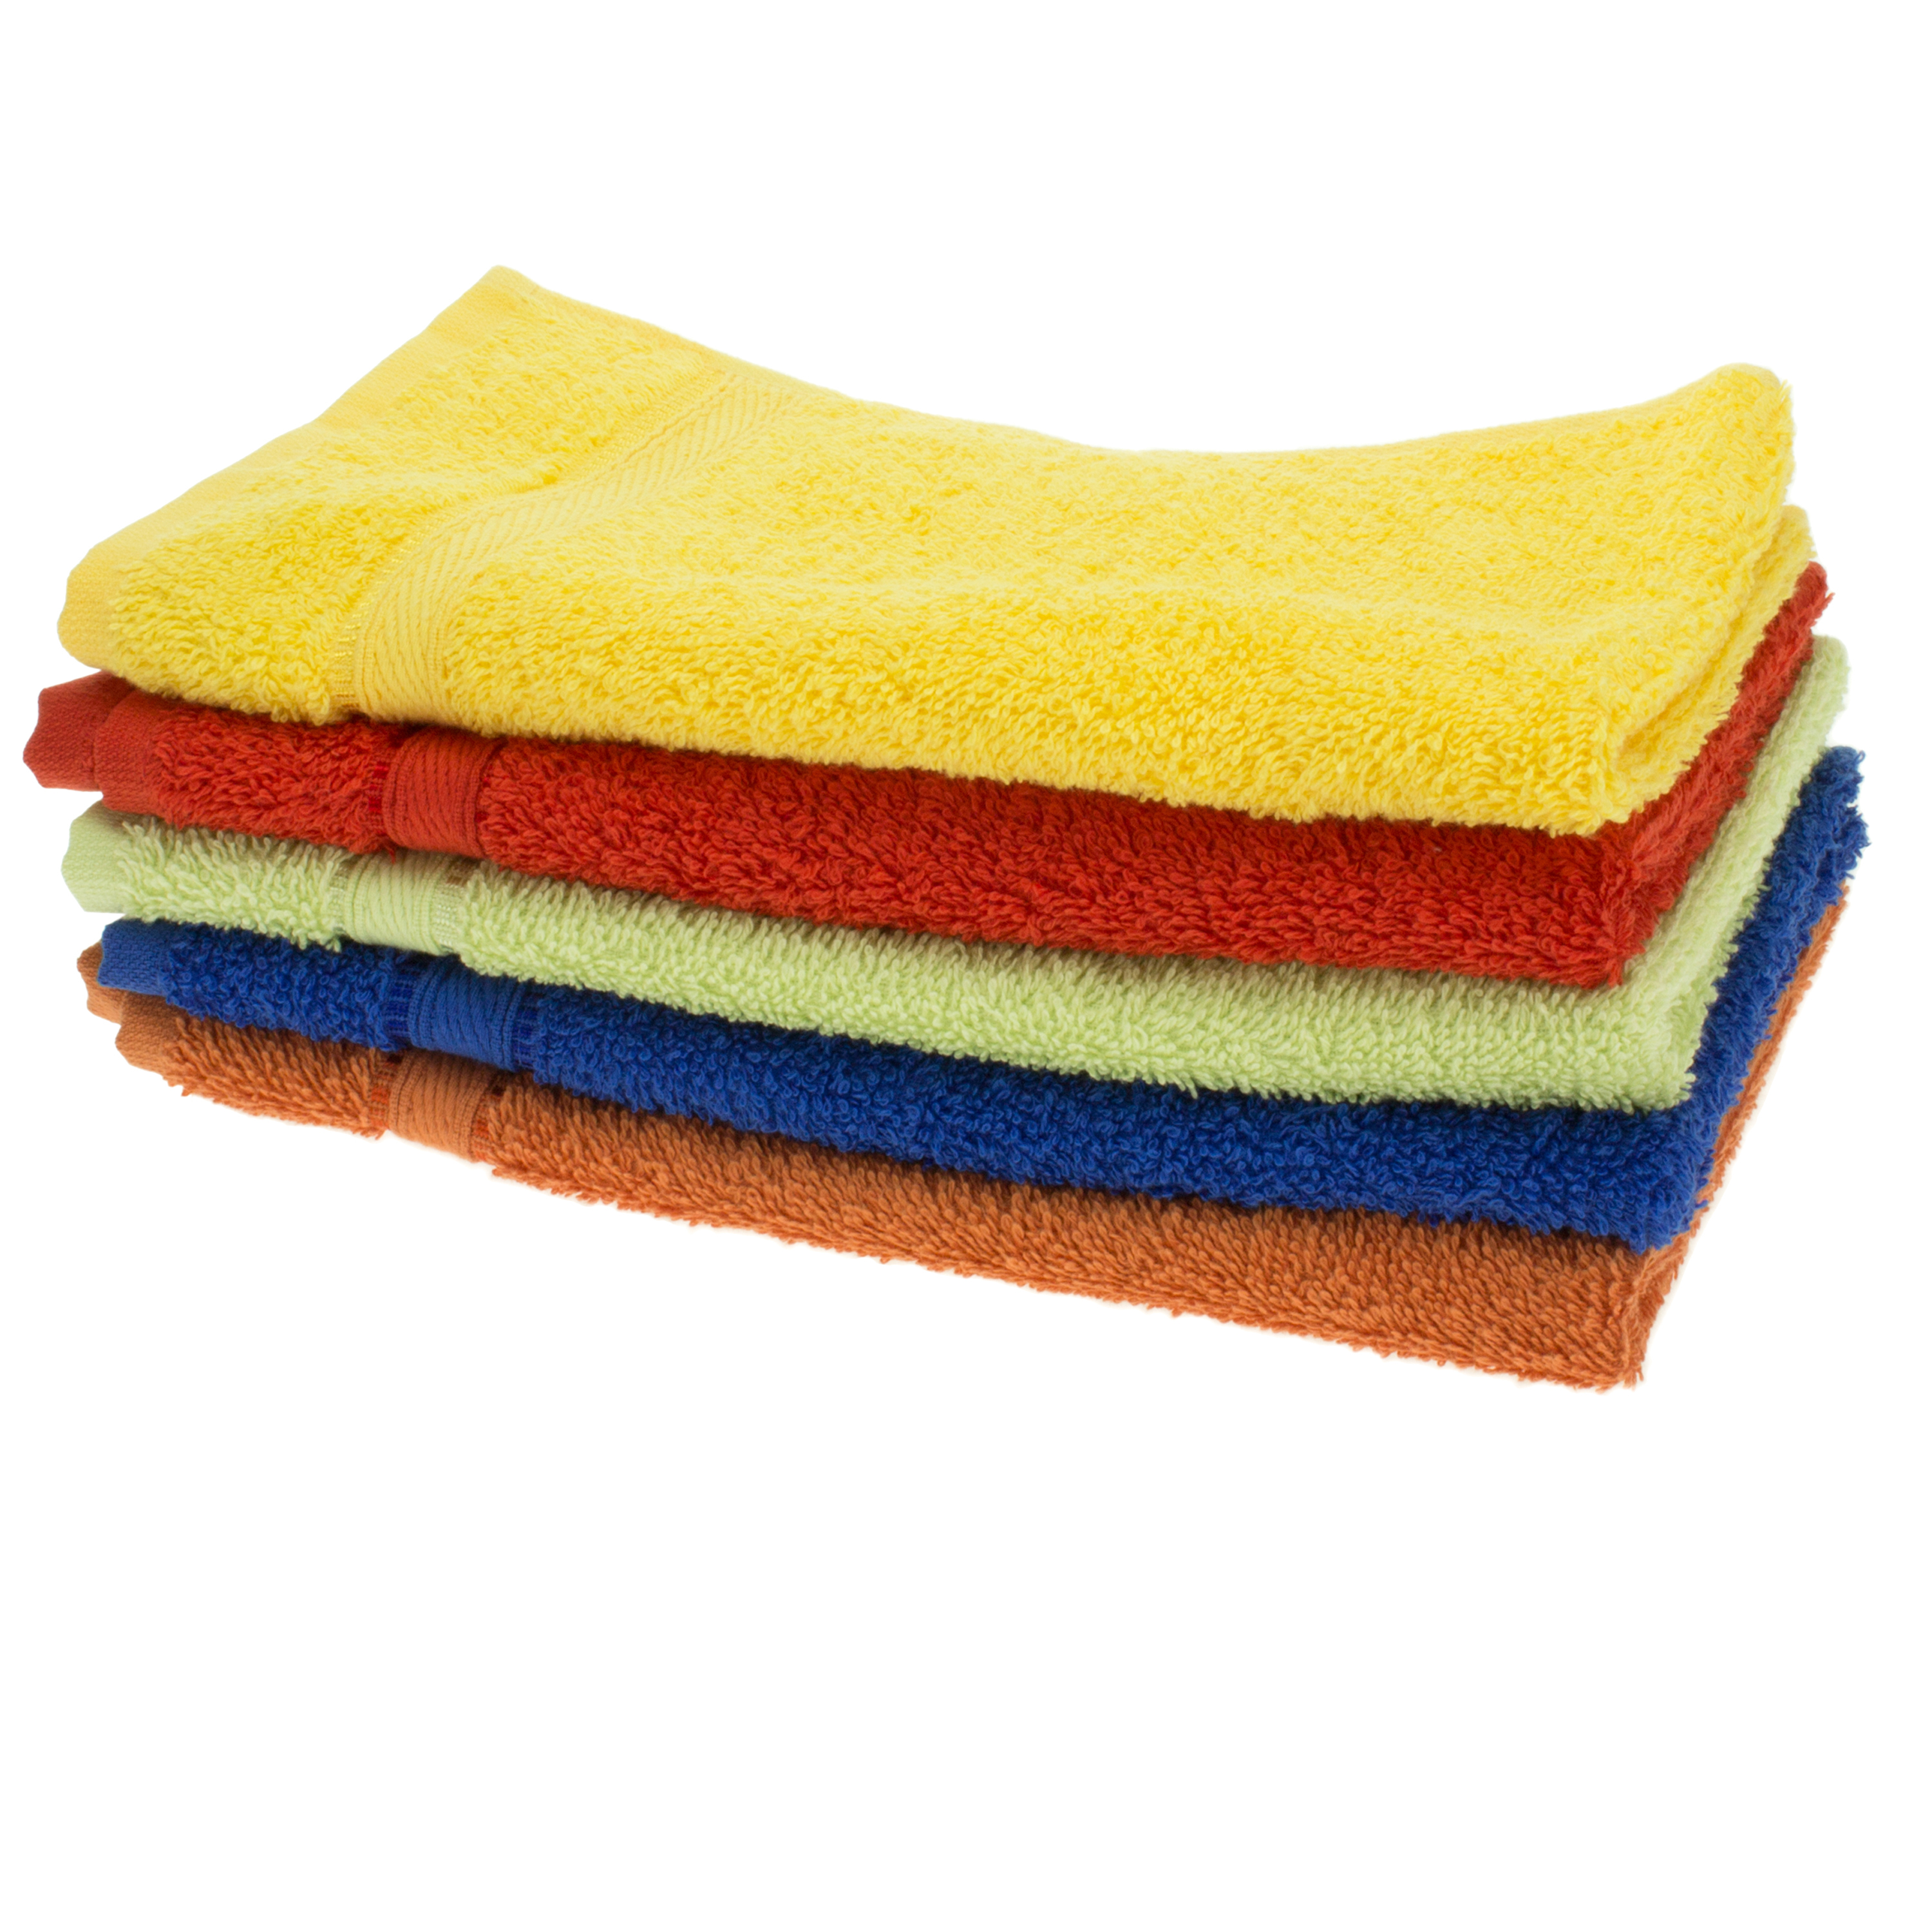 Handtuch Walkfrottier, verschiedene Farben, 30 x 50 cm